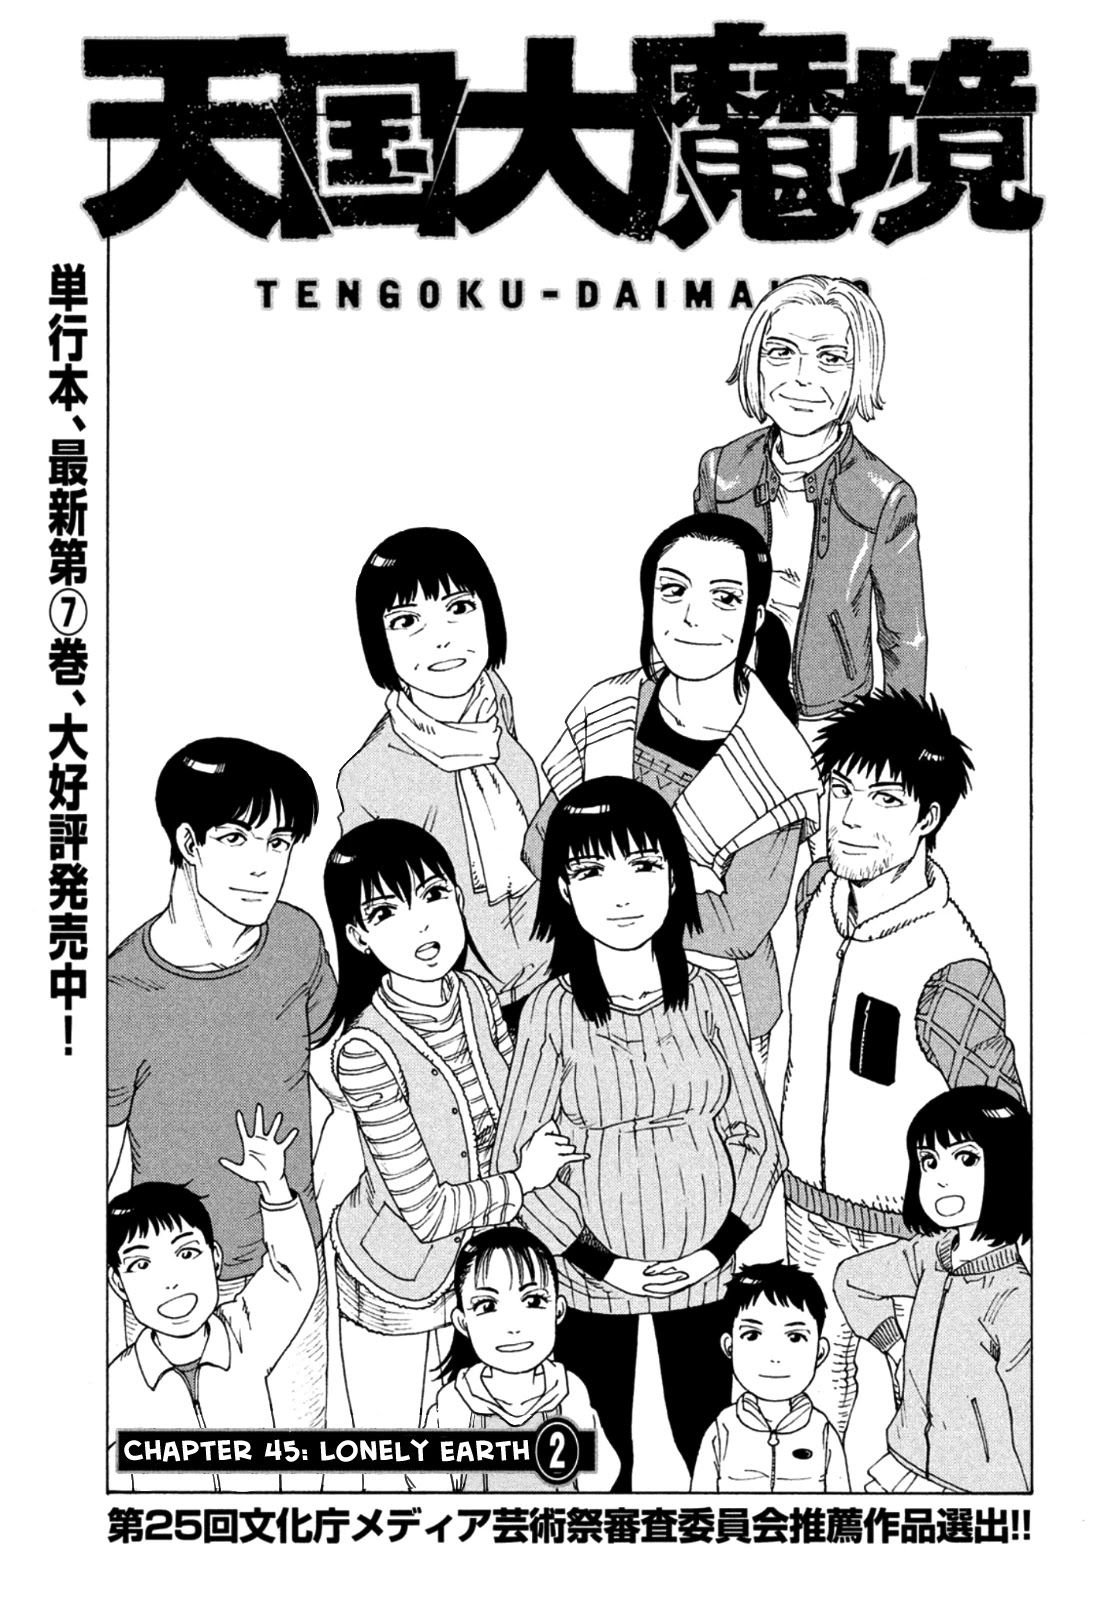 Tengoku Daimakyou Chapter 45